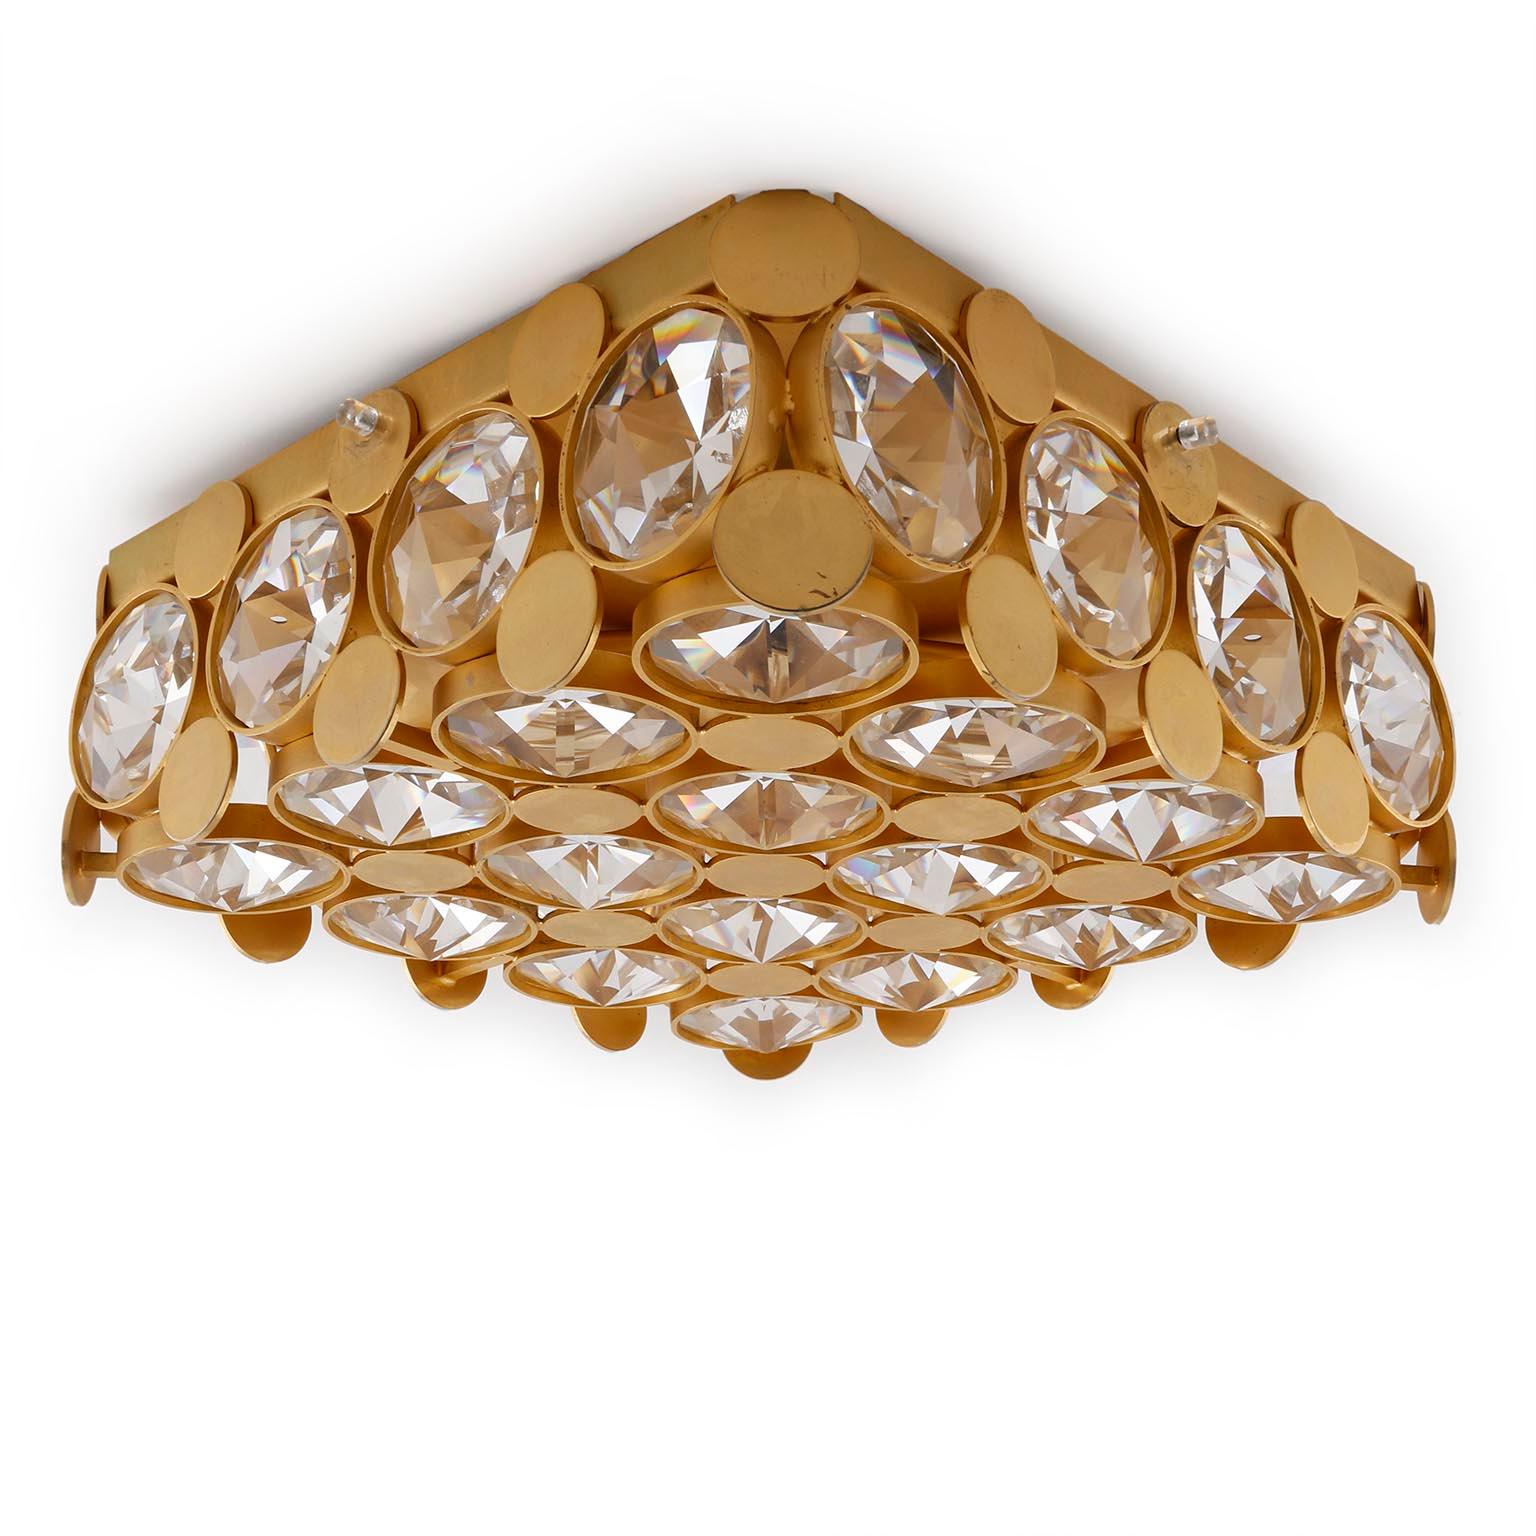 Lampe à encastrer carrée de Palwa (Palme & Walter), Allemagne, fabriquée au milieu du siècle dernier, vers 1970 (fin 1960 ou années 1970).
Un cadre doré est décoré d'un verre en cristal taillé en forme de diamant. La surface dorée est vieillie et